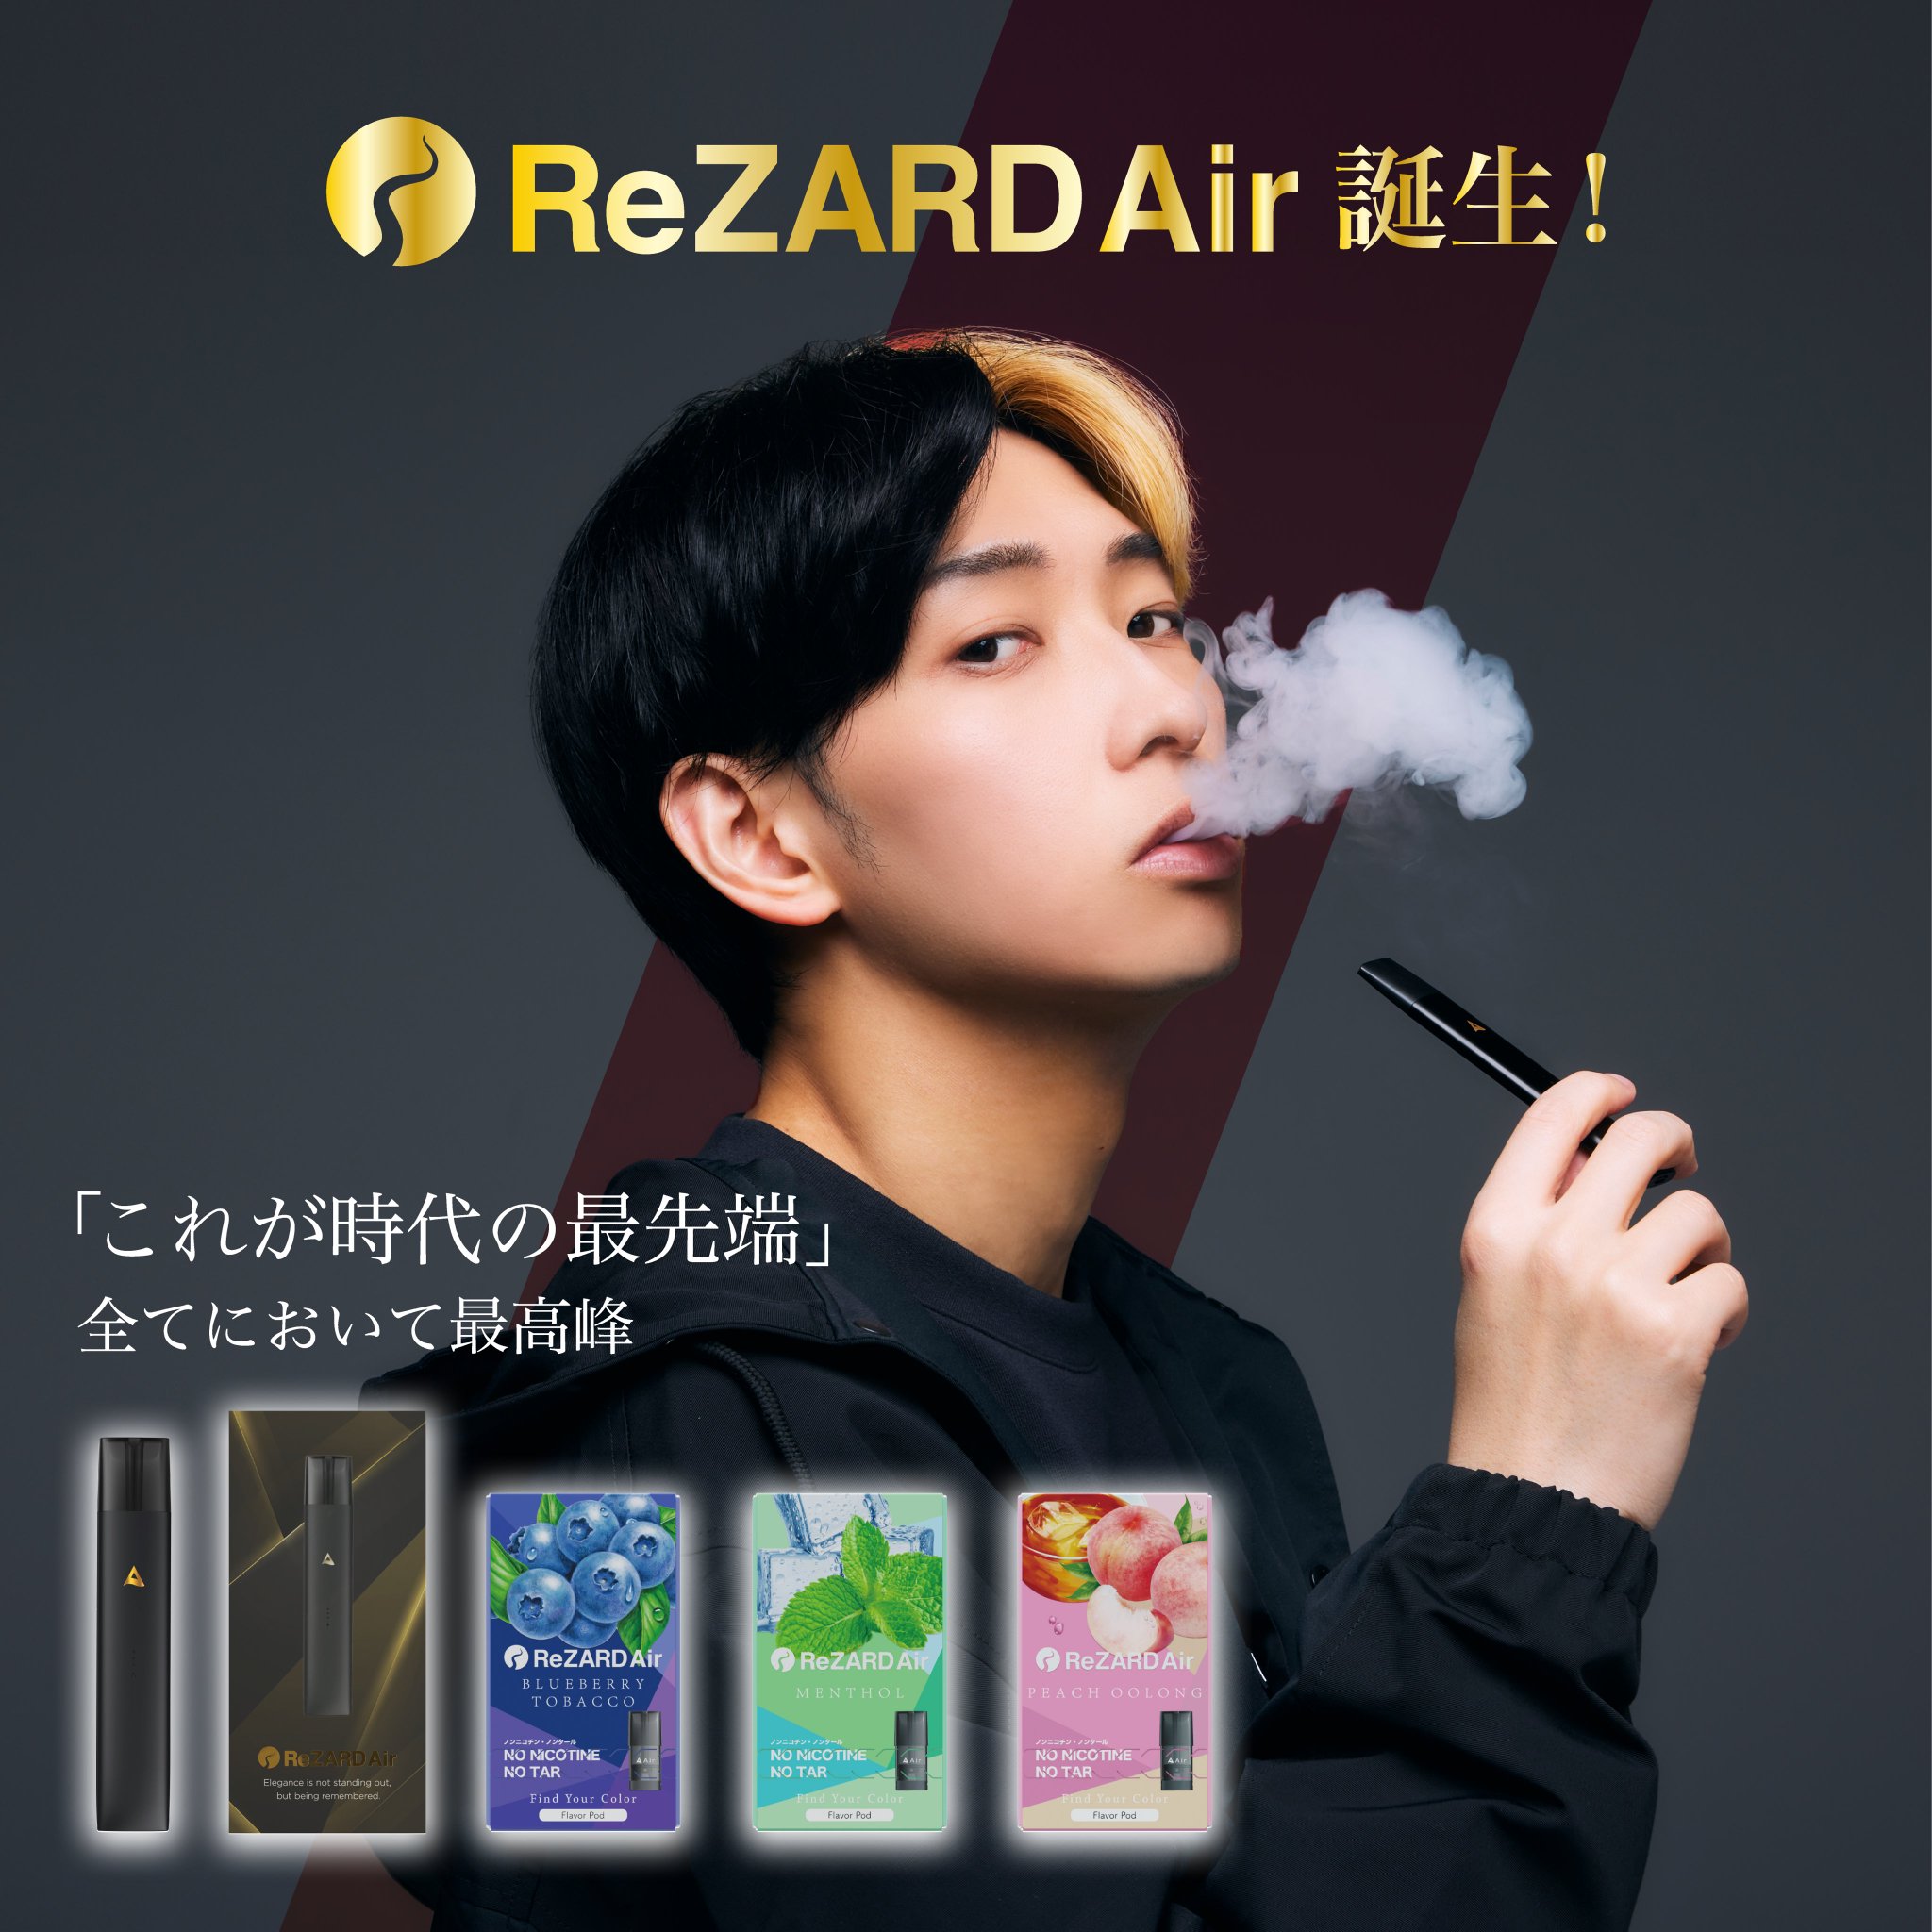 ReZARD Air シーシャ 電子タバコ YouTuberヒカル プロデュース-